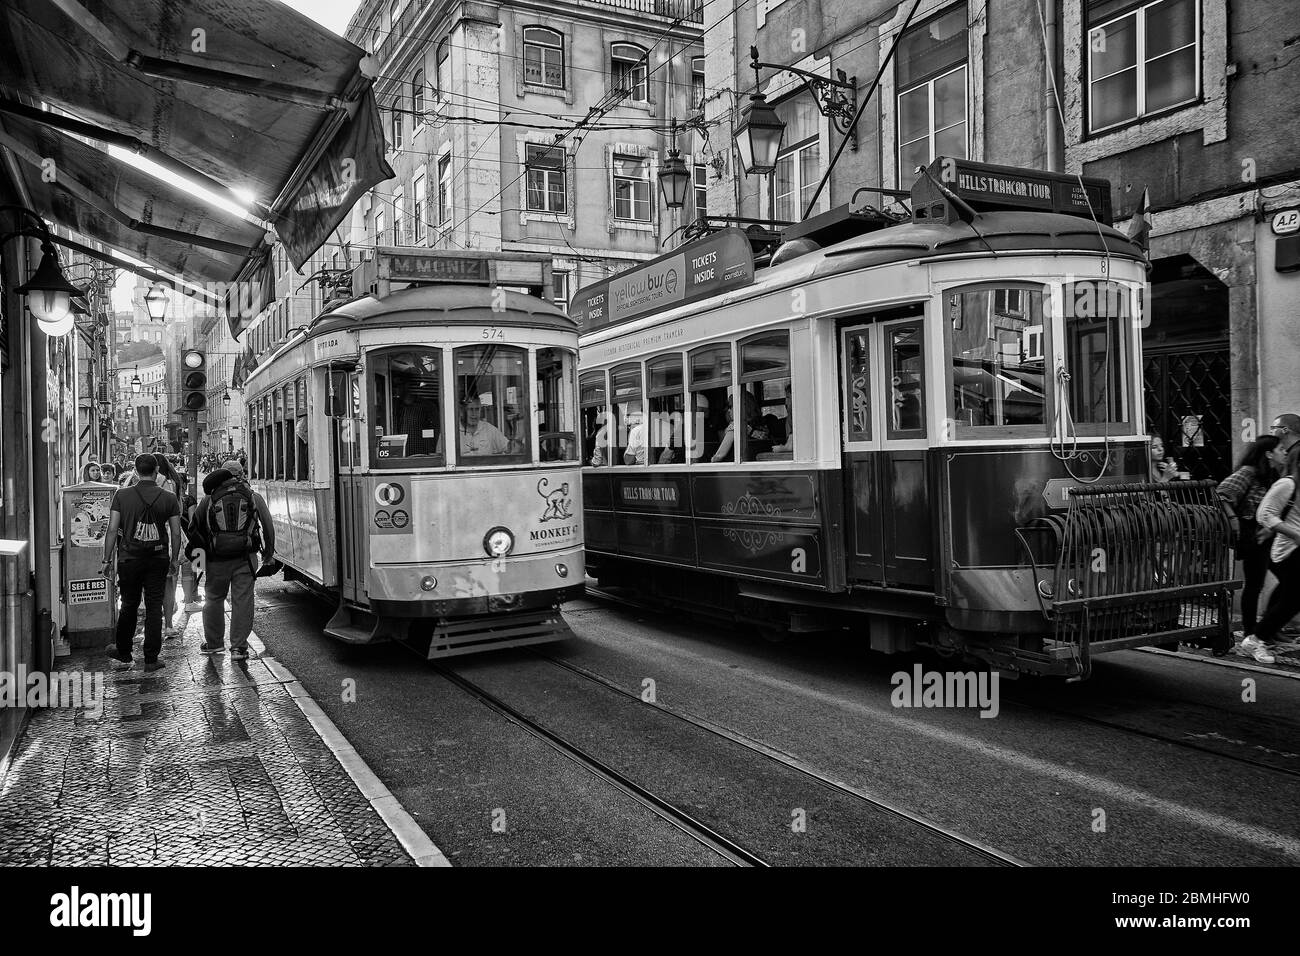 Un tram si sposta lungo una strada nella zona della città vecchia di Lisbona, Portogallo. Foto Stock